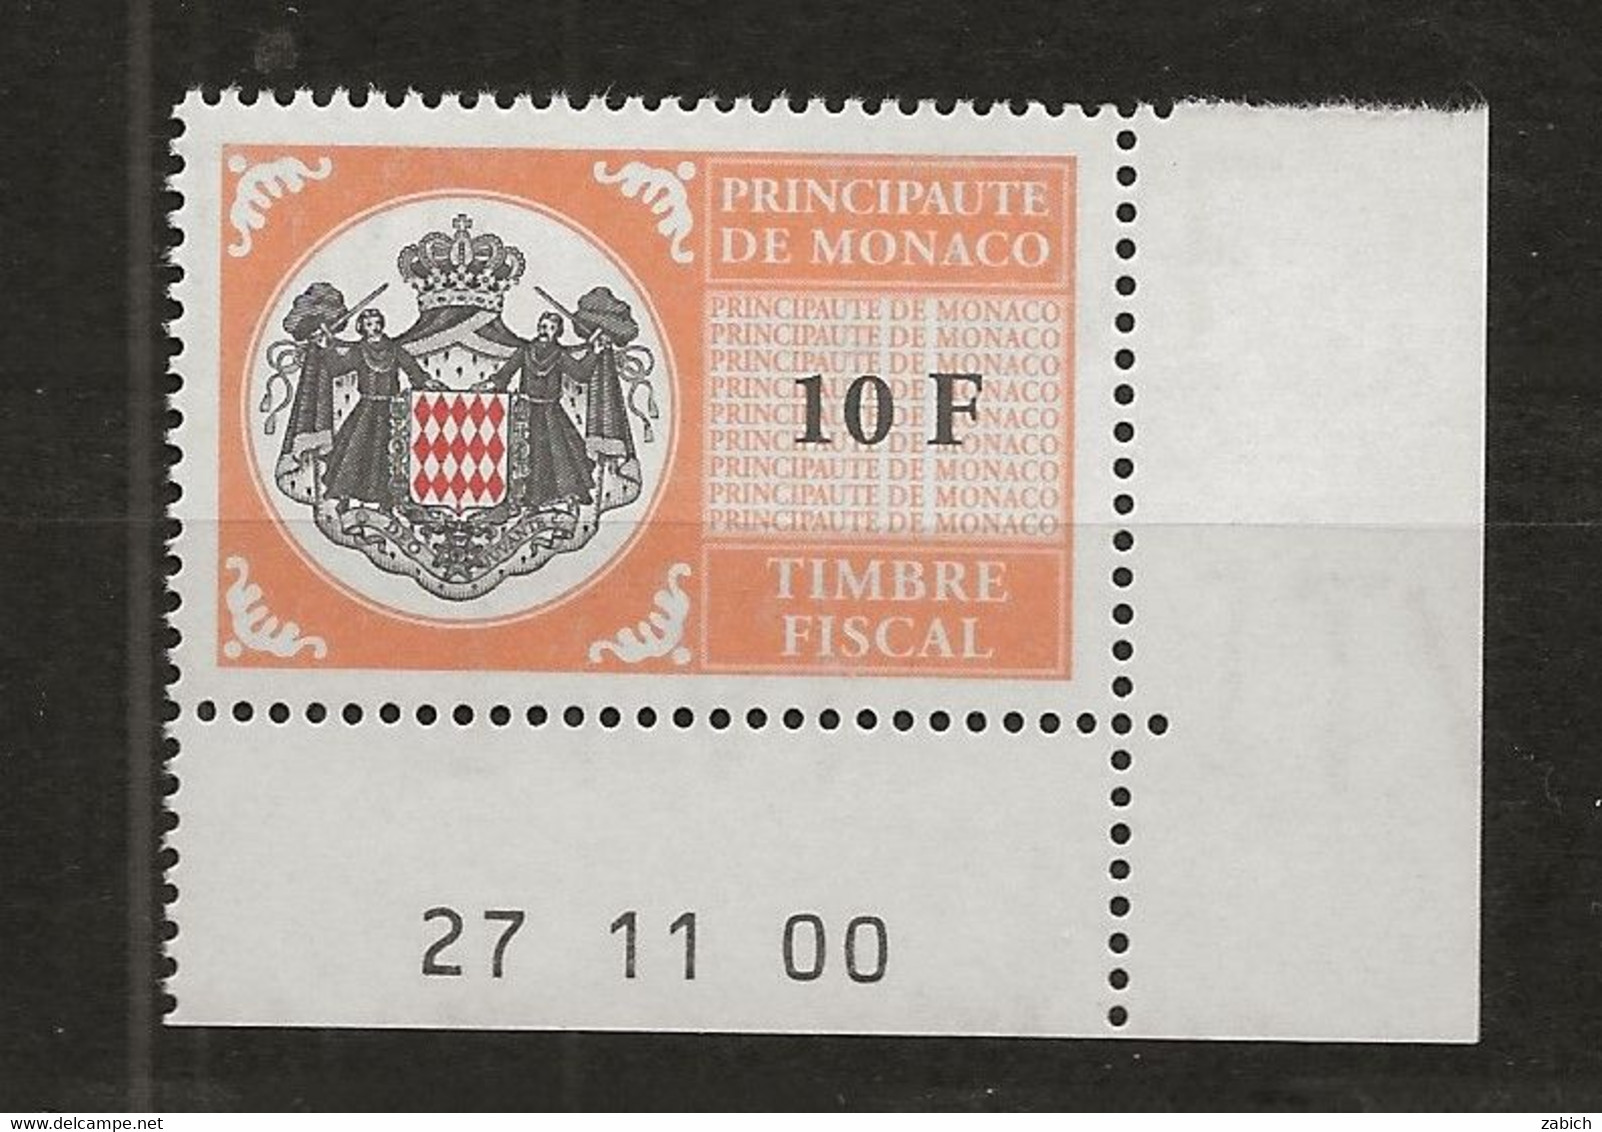 TIMBRES FISCAUX DE MONACO SERIE UNIFIEE N°102 10F Orange  Coin Daté Du 27 11 00 Neuf Gomme Mnh (**) - Steuermarken